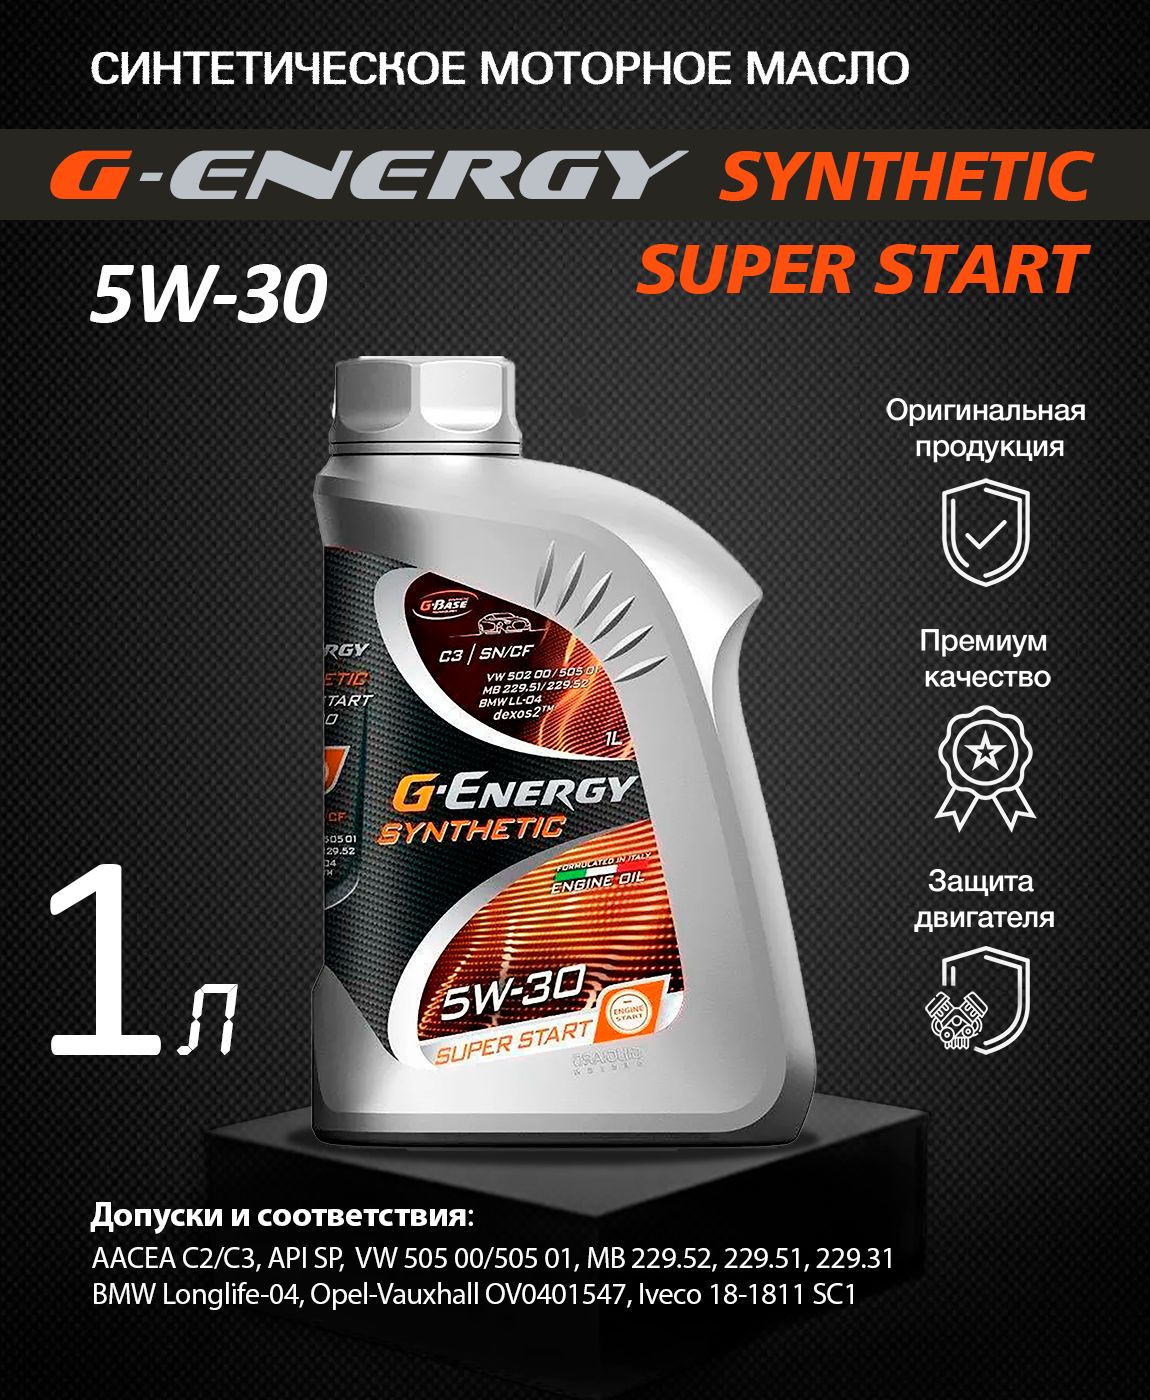 Масло g energy super start. G Energy 5w40 Актив. G-Energy Synthetic Active 5w-30. G-Energy Synthetic Active 5w-40. Масло g-Energy Synthetic super start 5w-30.